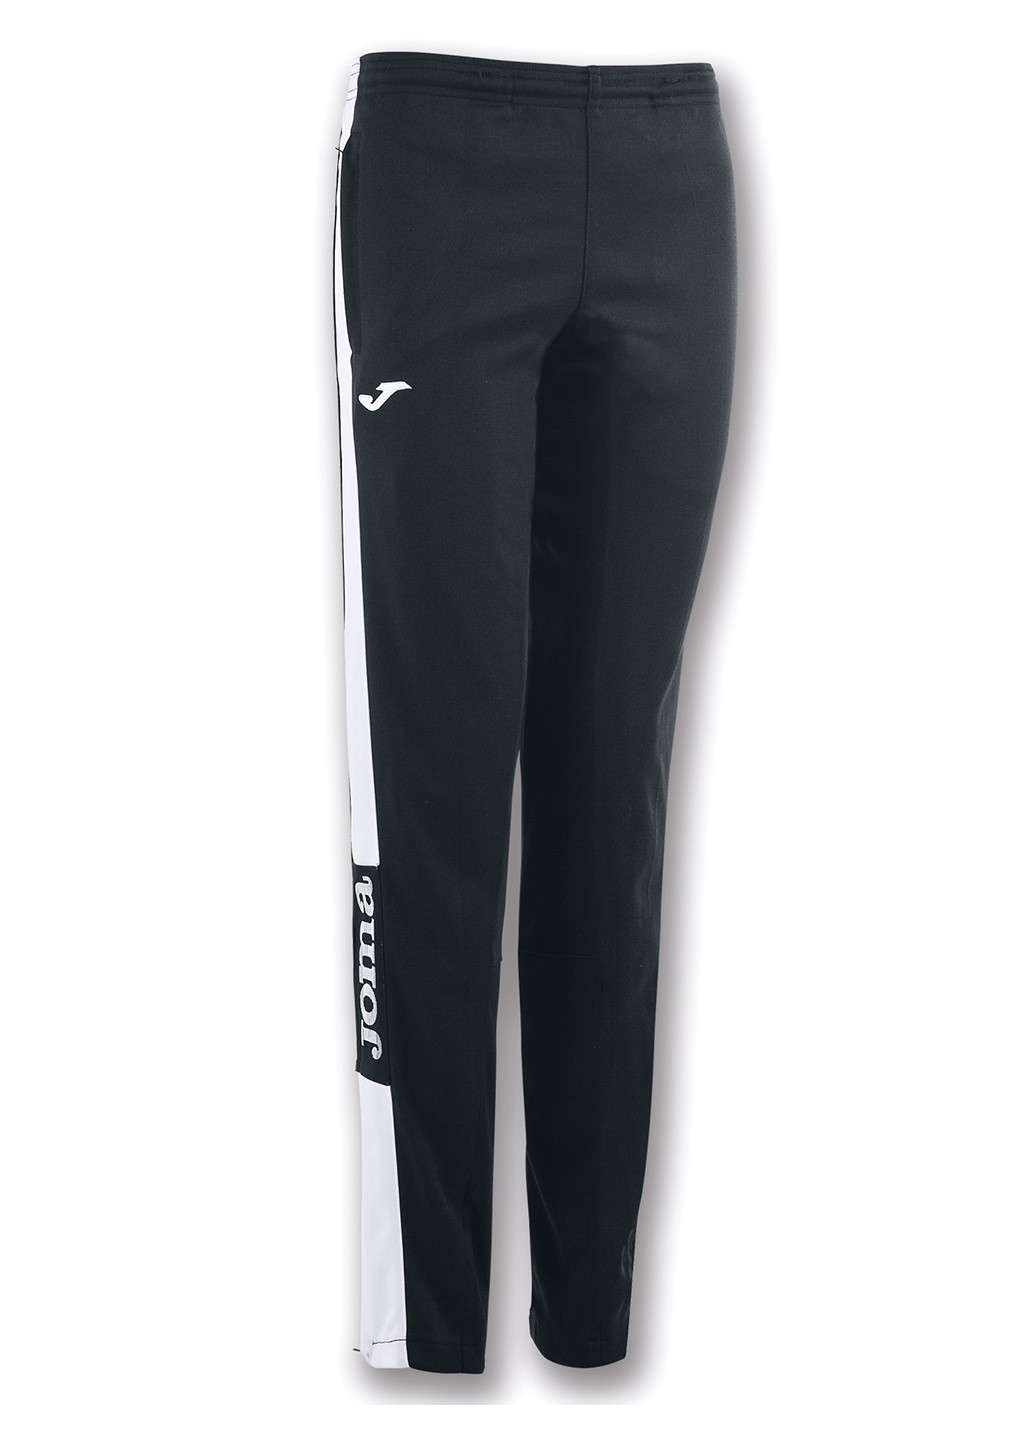 Черные спортивные демисезонные зауженные брюки Joma